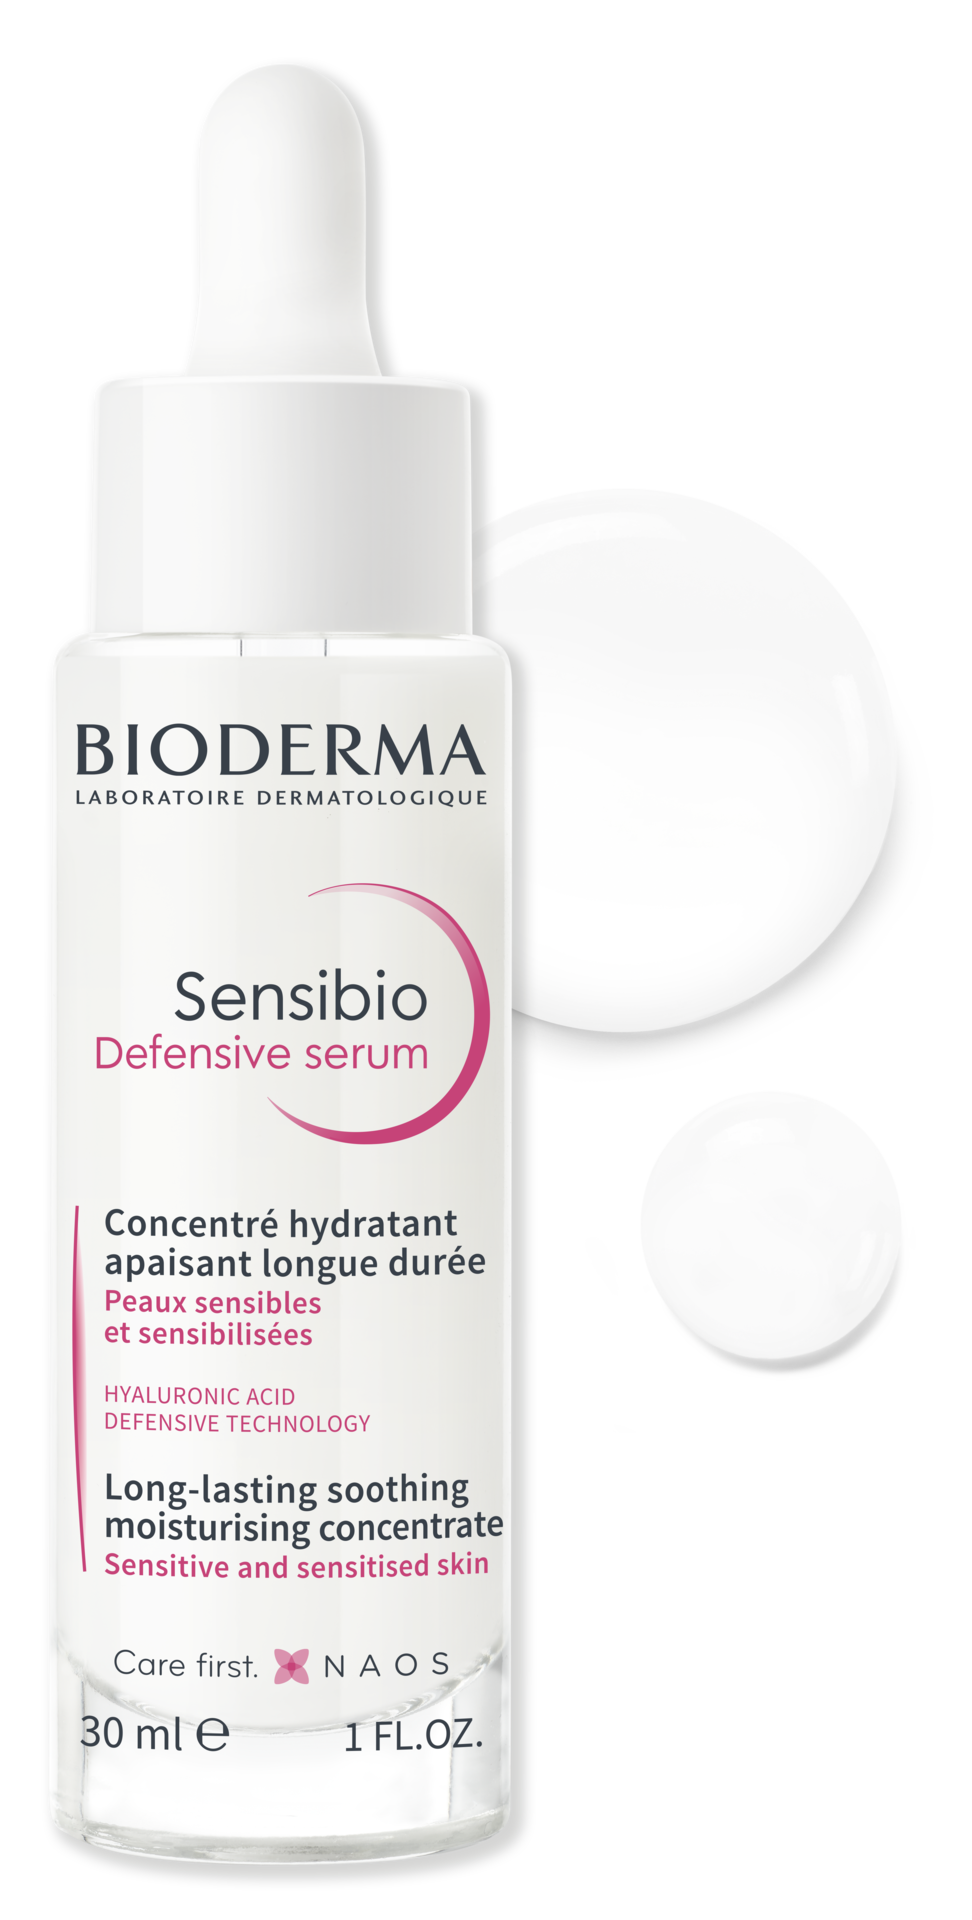 Bioderma Sensibio Defensive Serum 30 ml